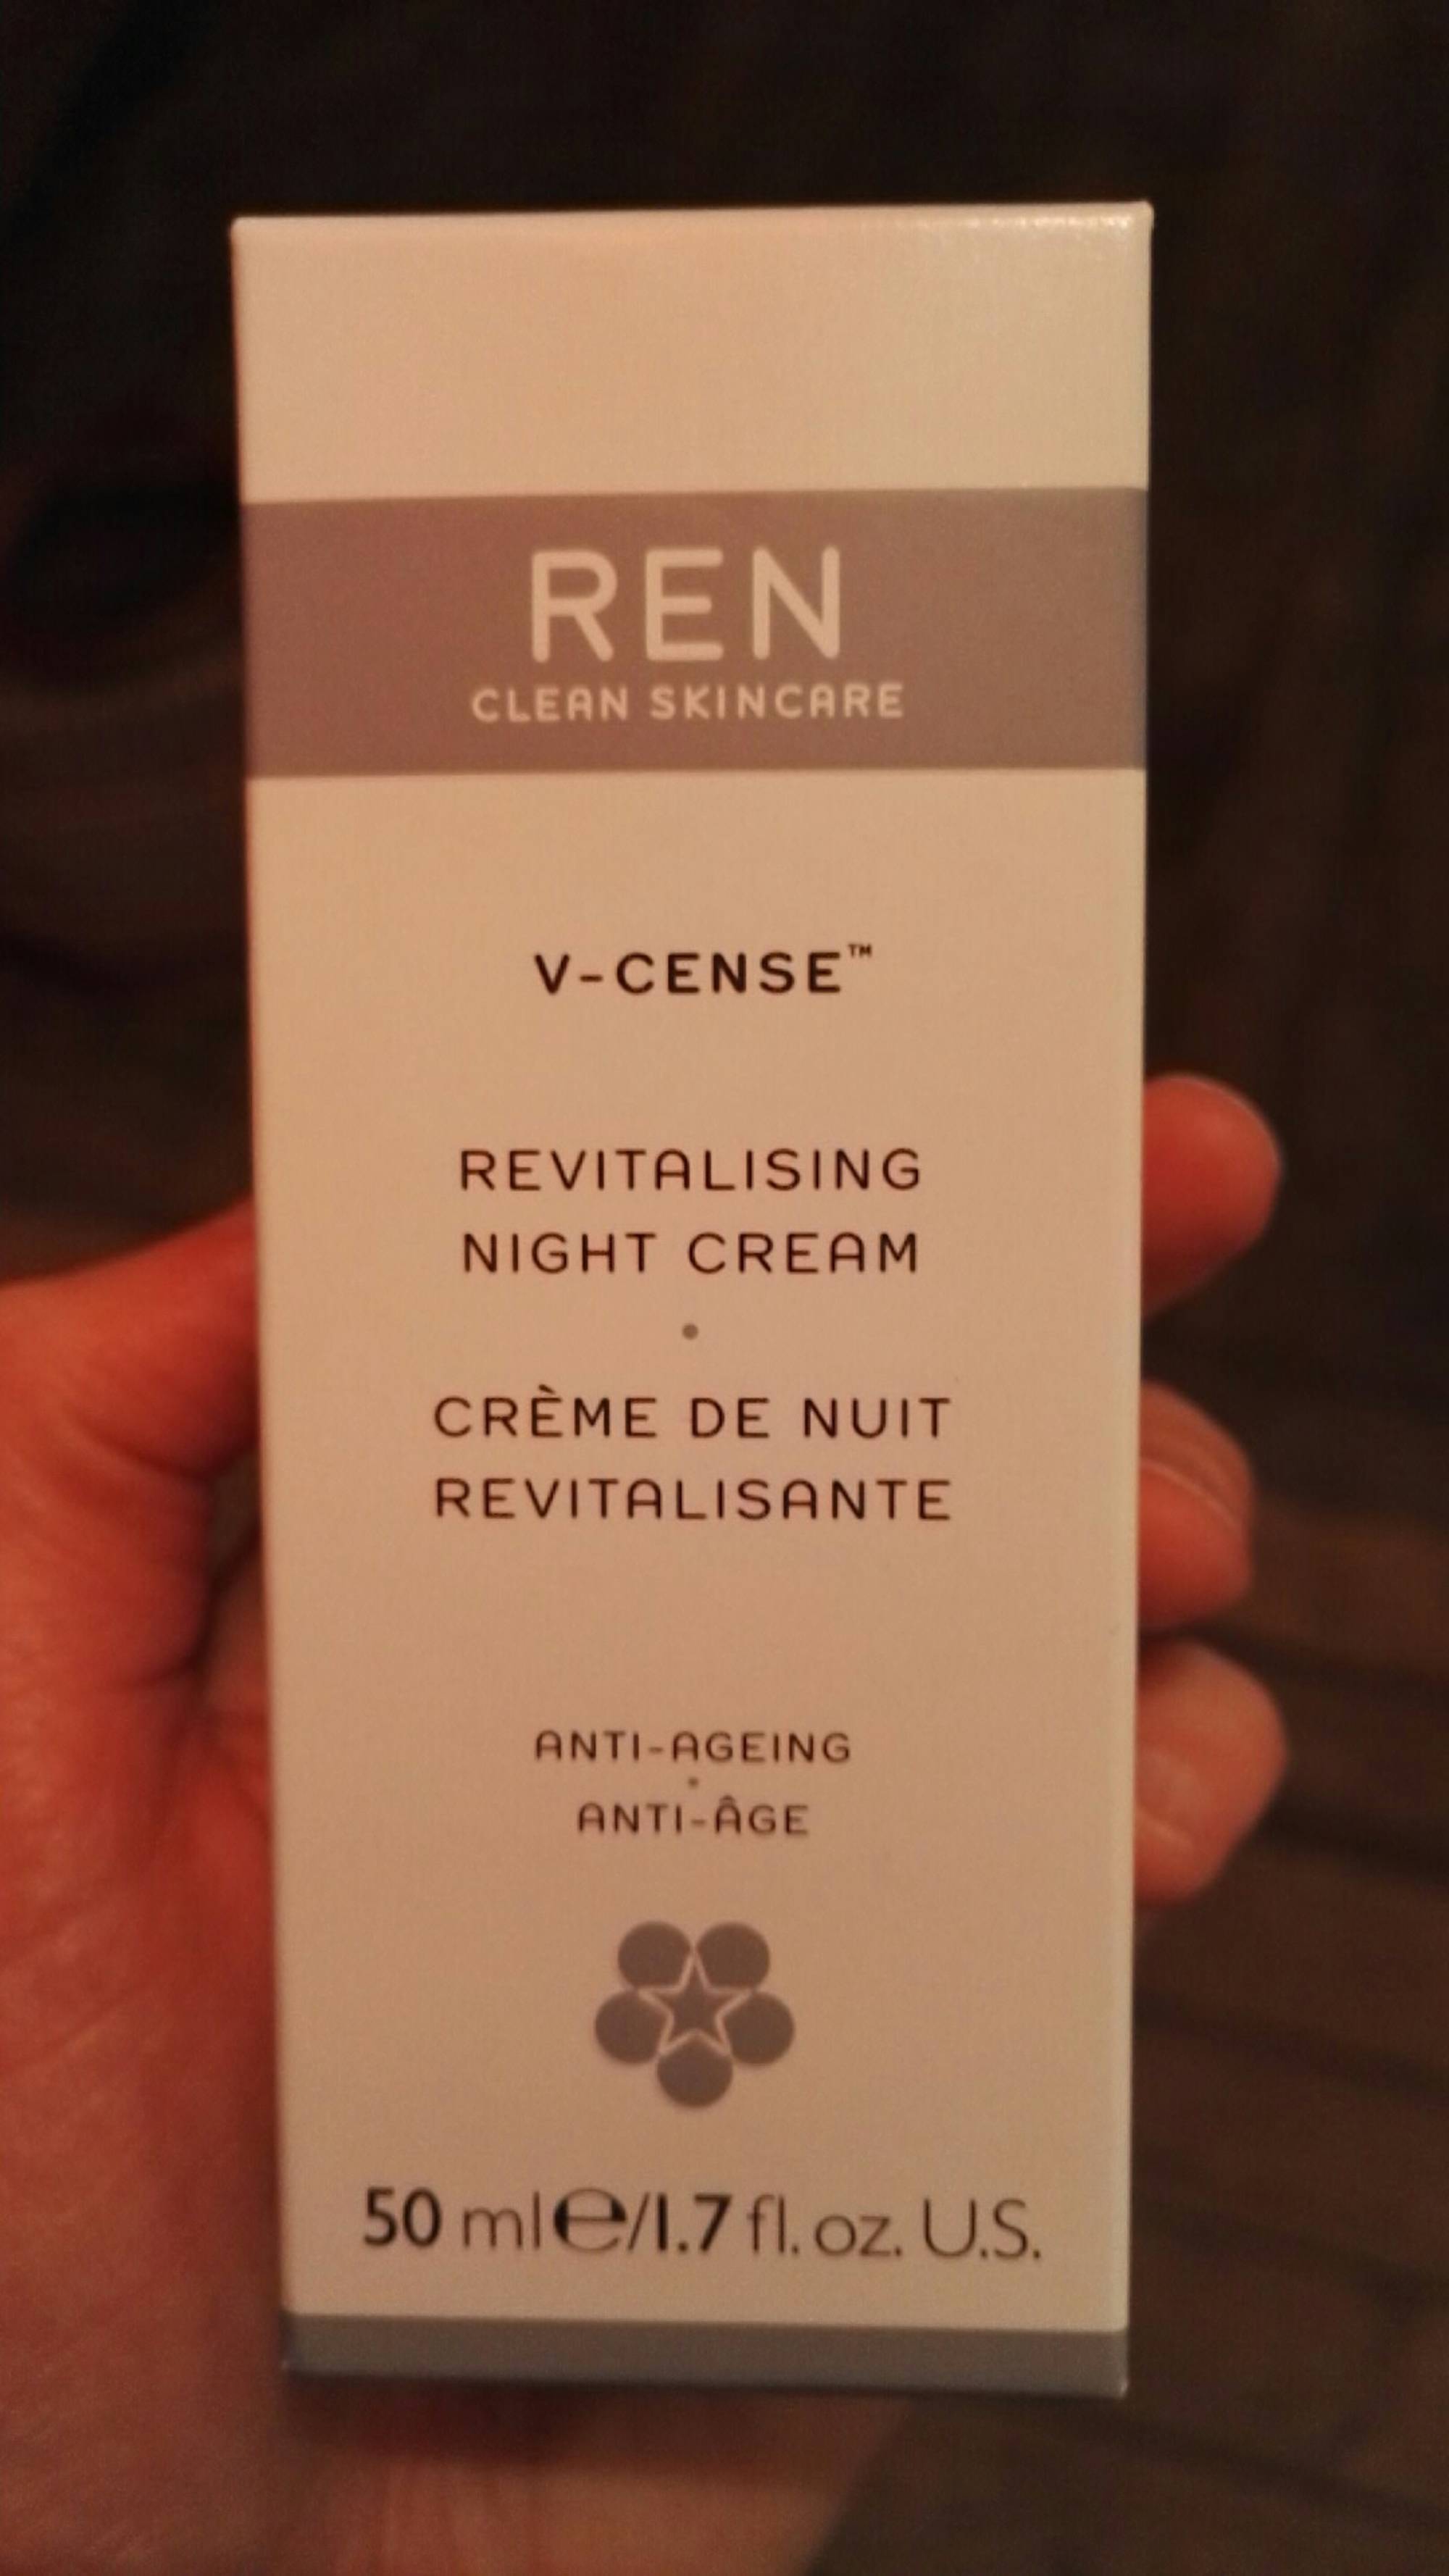 REN - V-cense - Crème de nuit revitalisante anti-âge